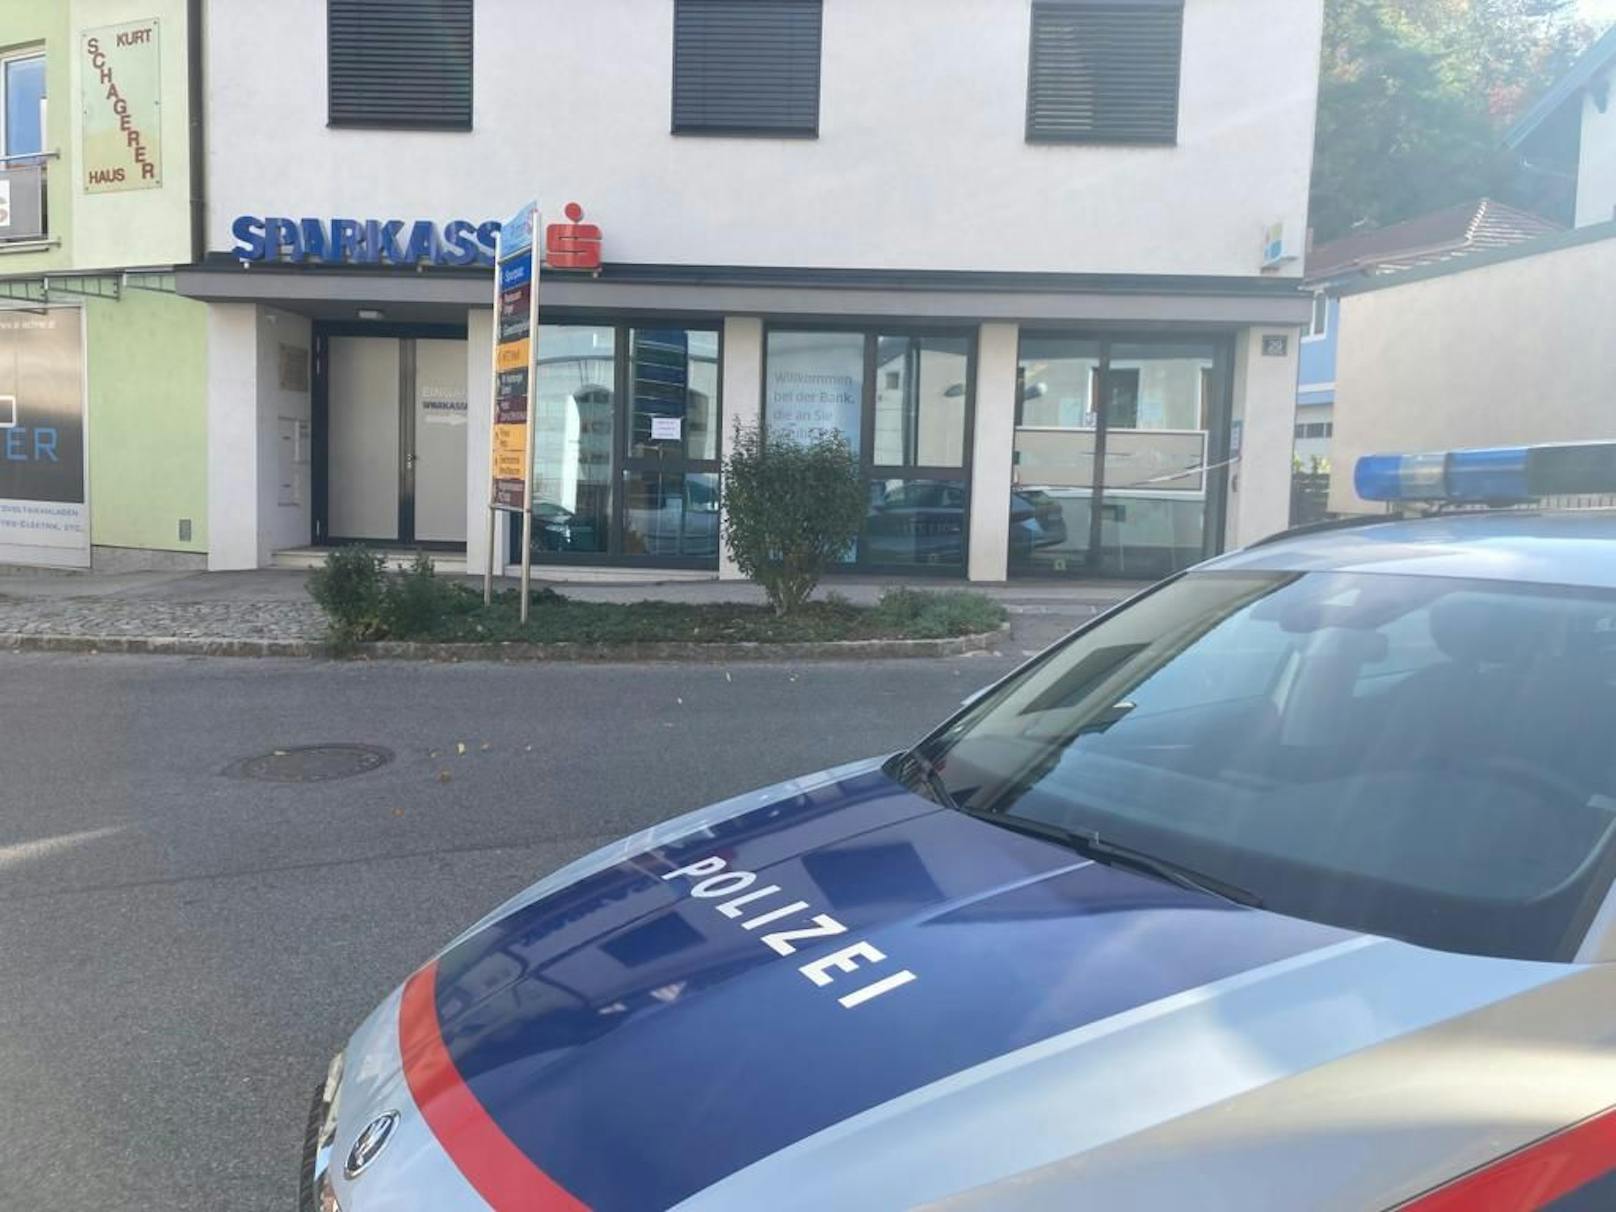 Sparkasse Pitten: Die Polizei ermittelt